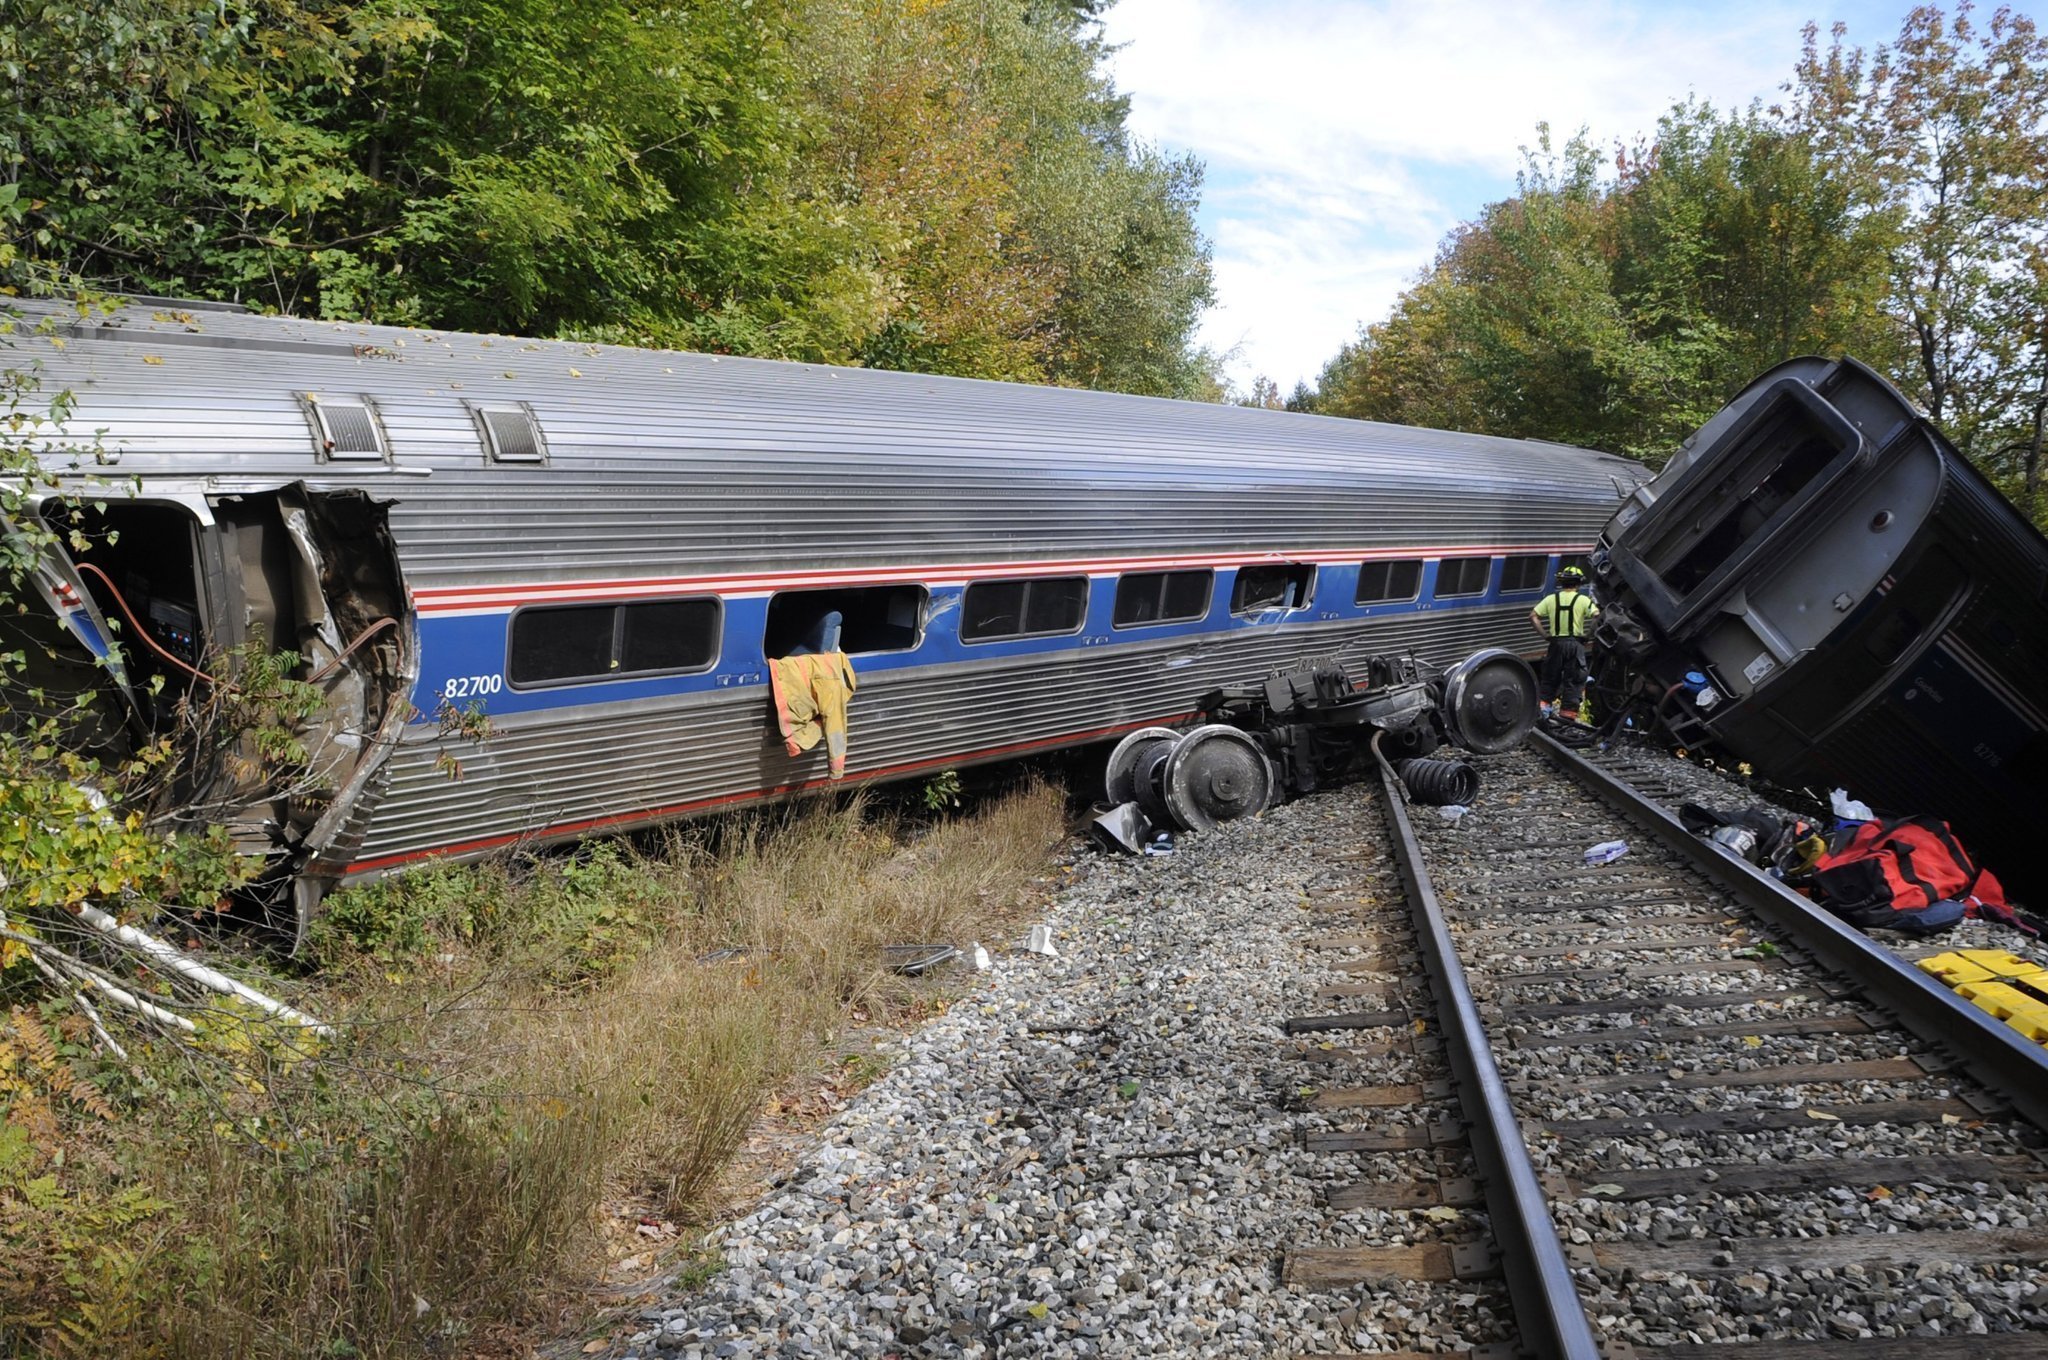 Amtrak train from Vermont to D.C. derails, injuring 7 Chicago Tribune